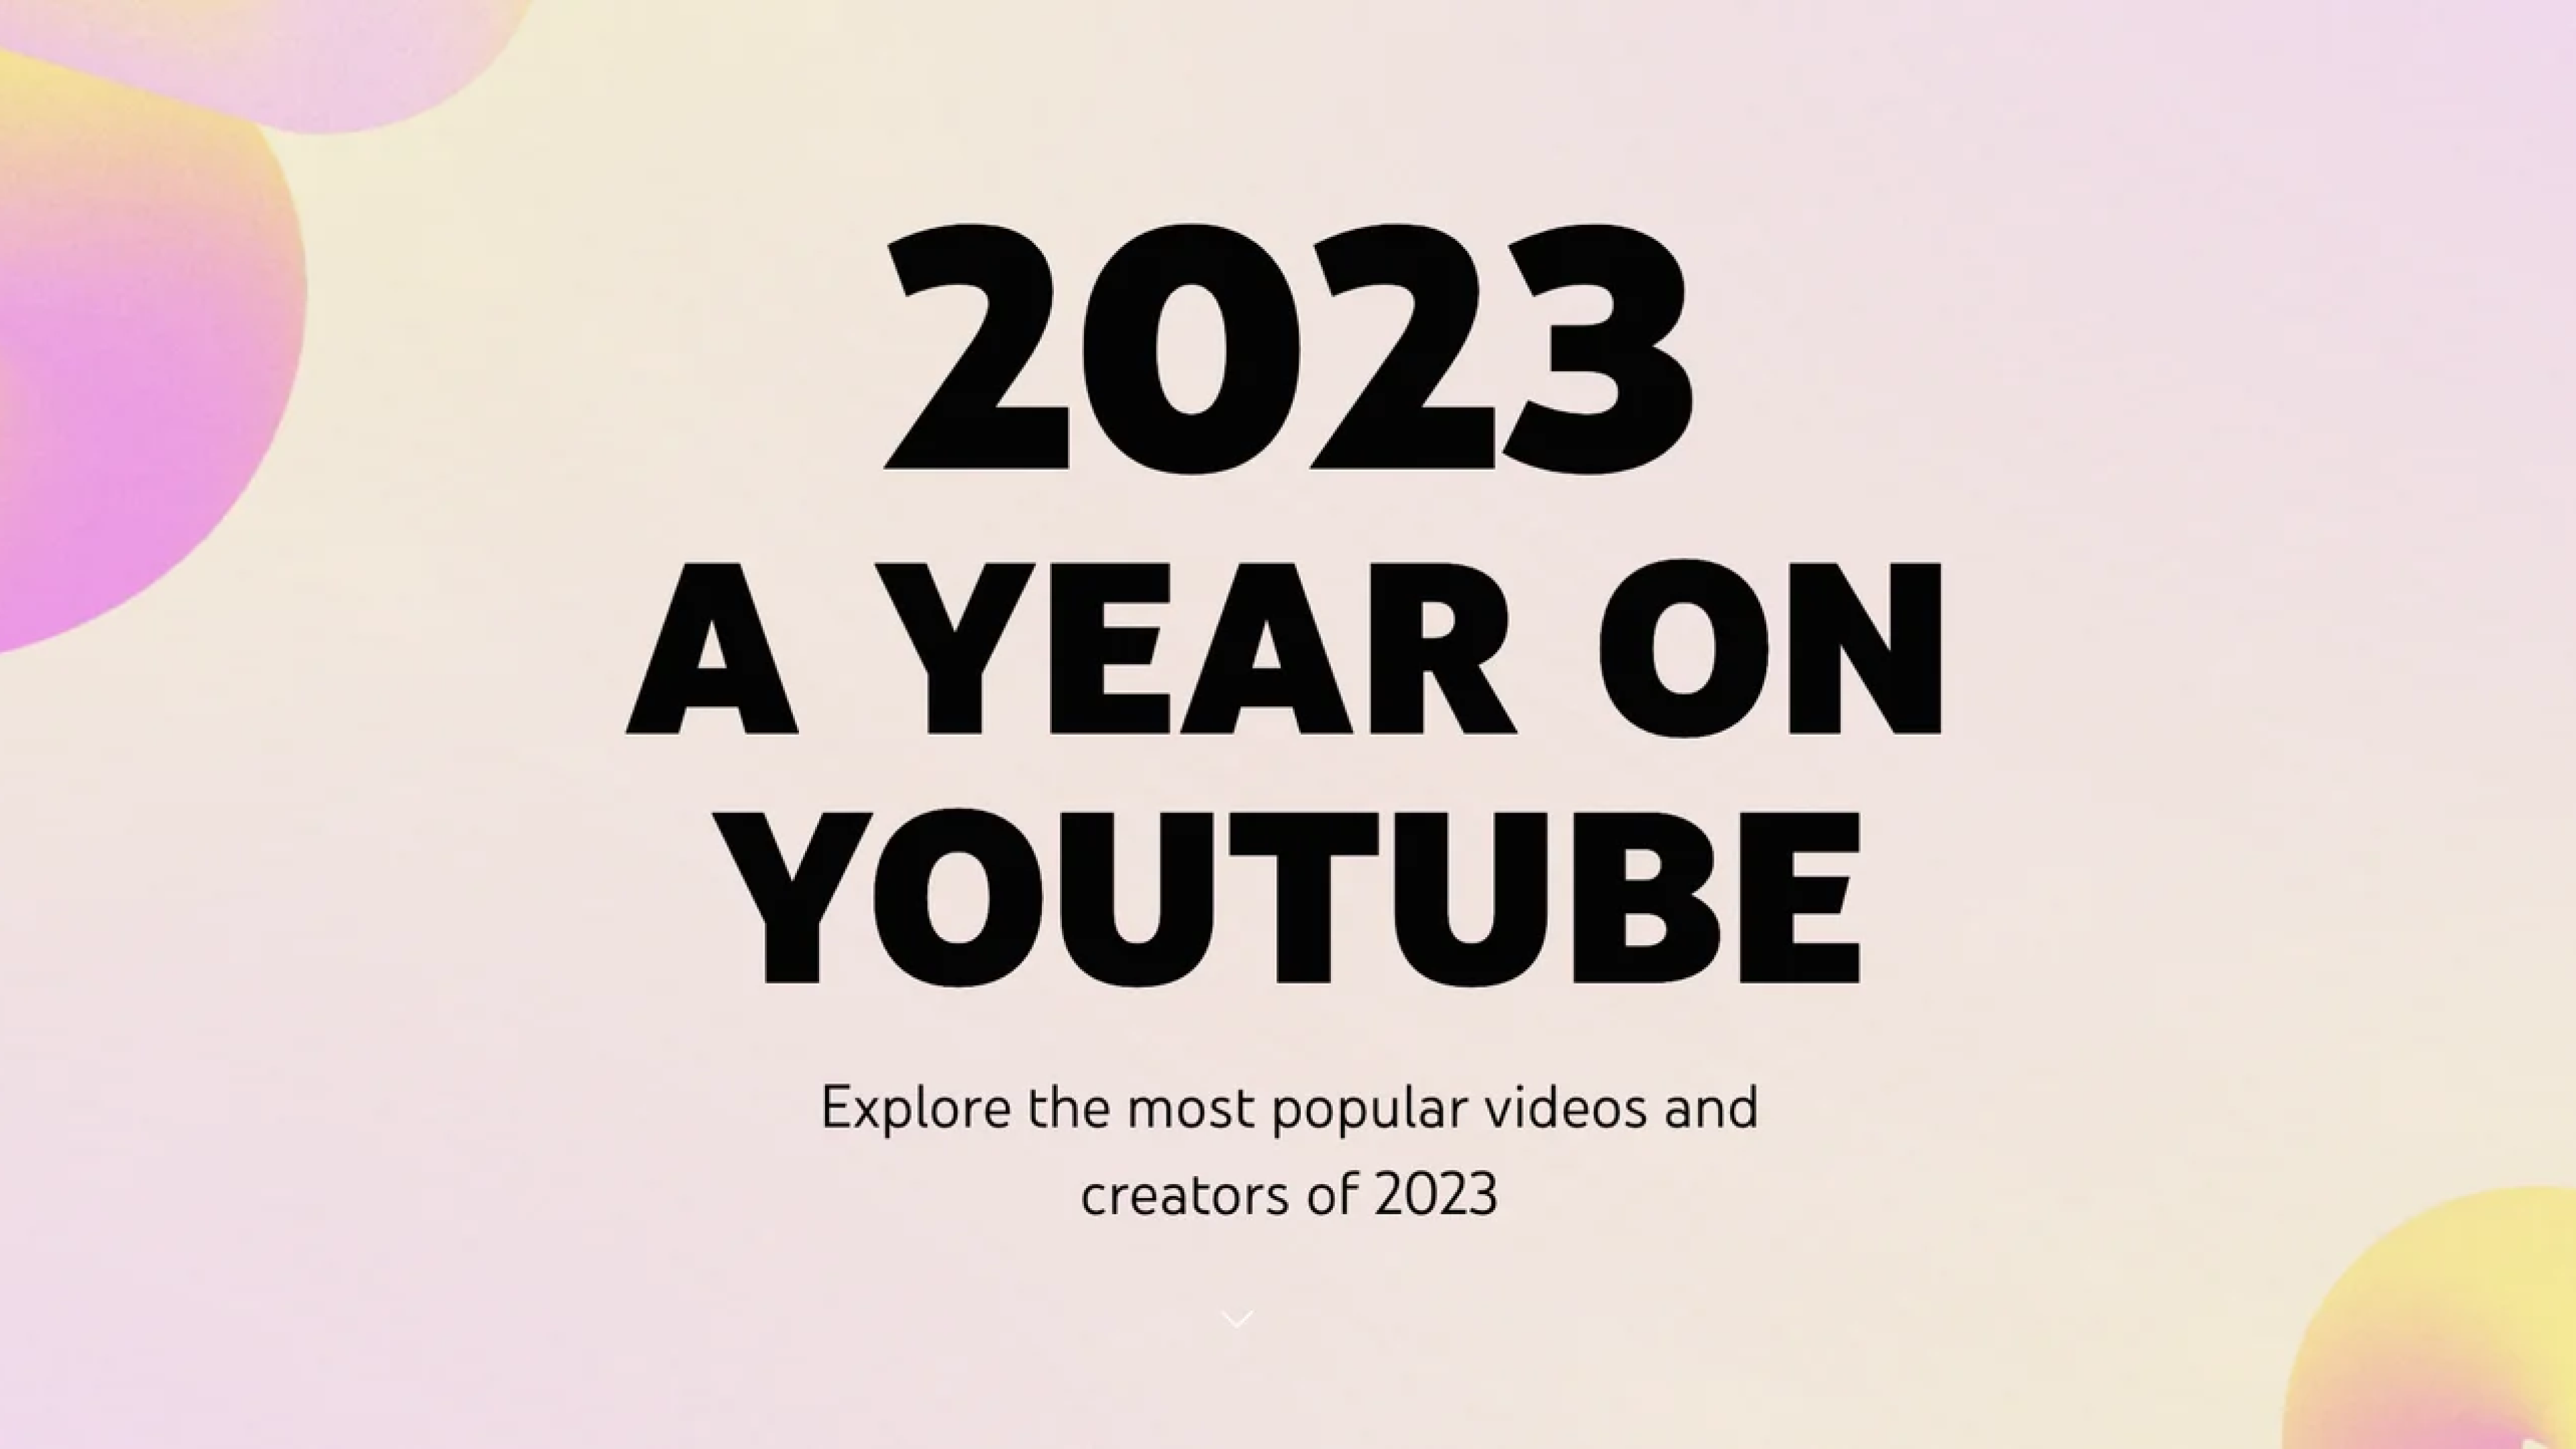 ユーモラスな動画で人気の「りんき」がYouTubeの2023年登録者増加クリエイタートップ10にランクイン！